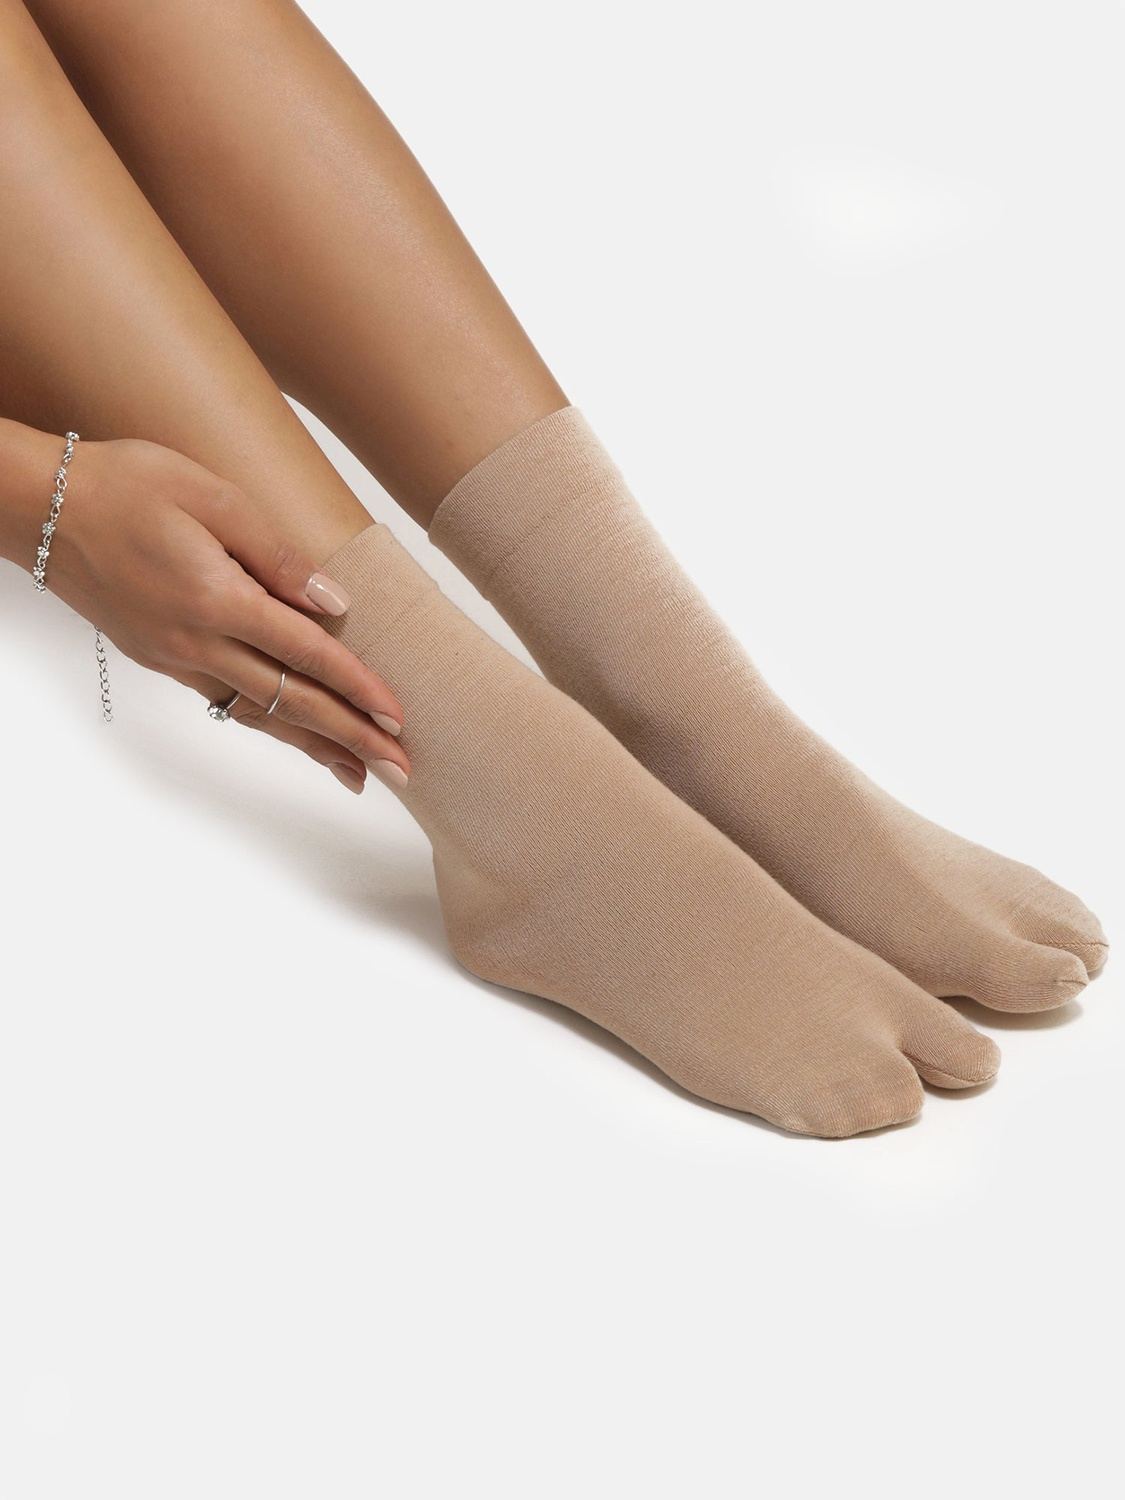 Ankle Length Thumb Socks - Skin